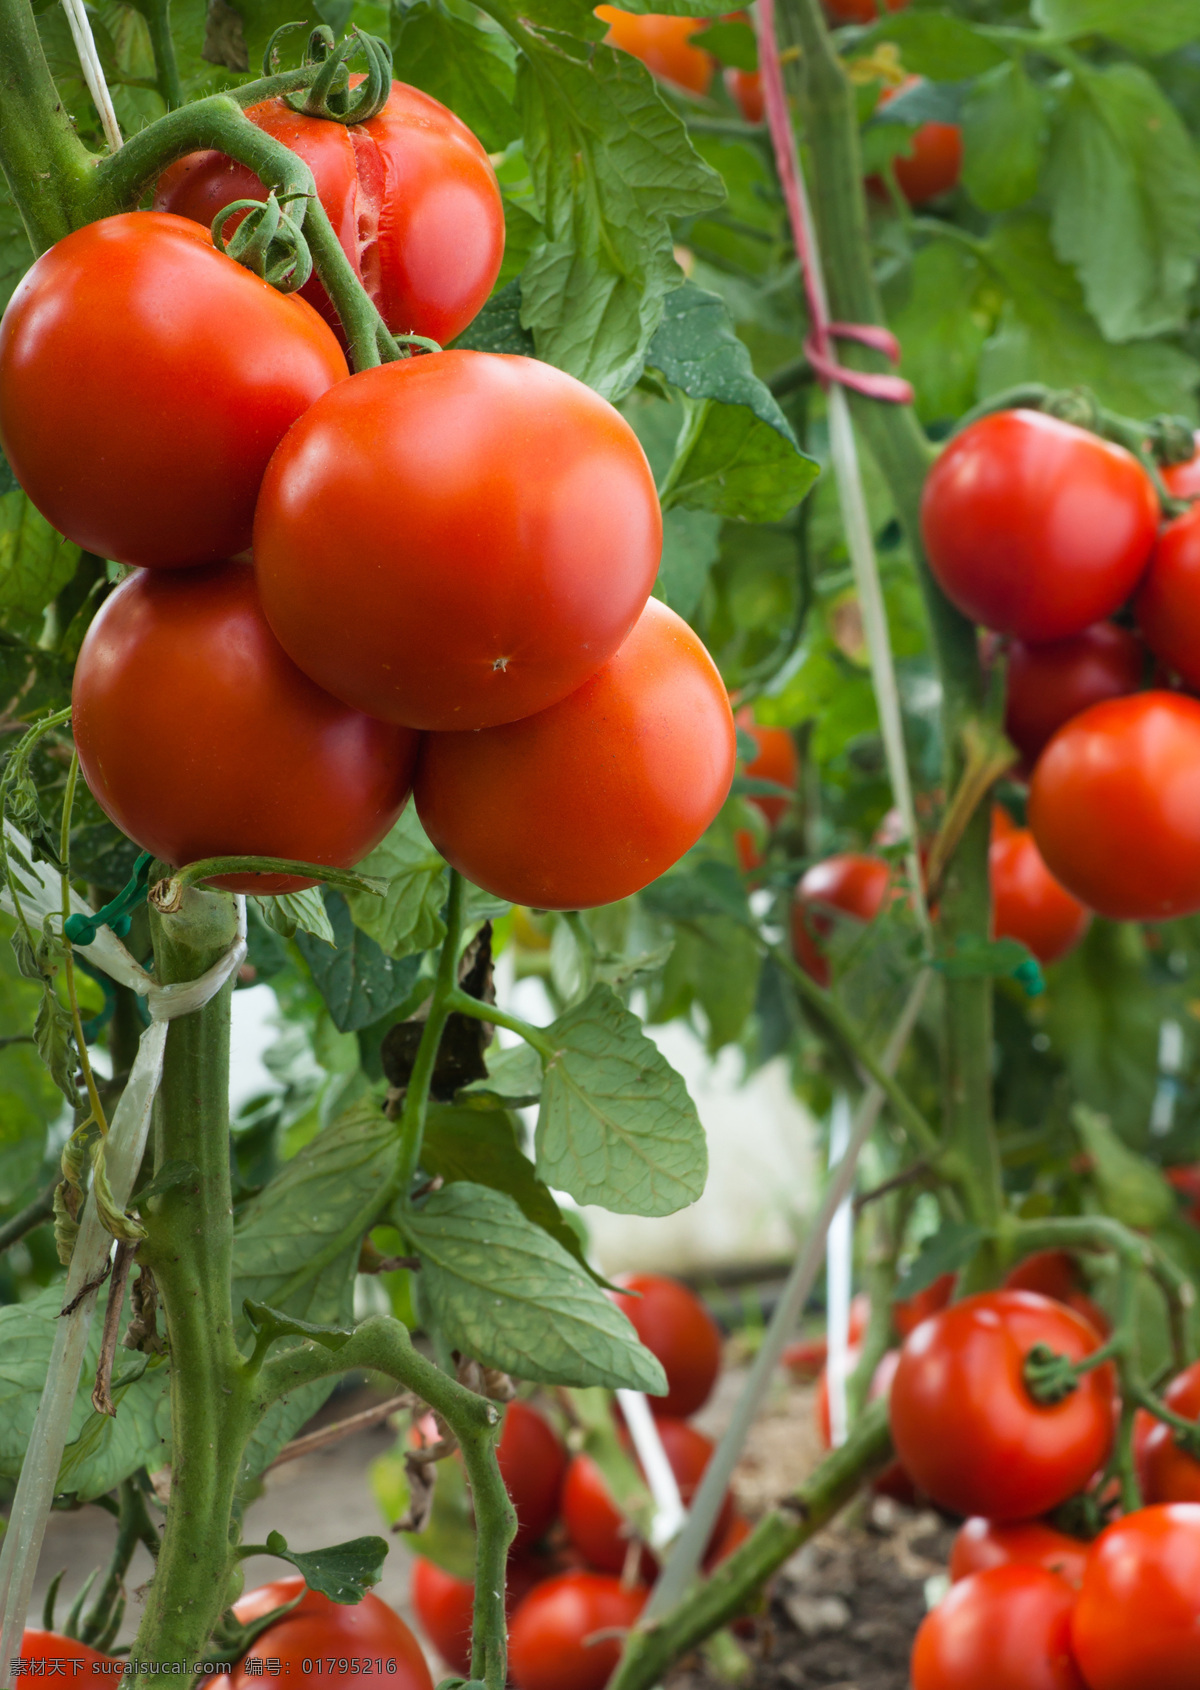 西红柿 番茄 番茄酱 蔬菜 水果 果汁 美食 小番茄 生物世界